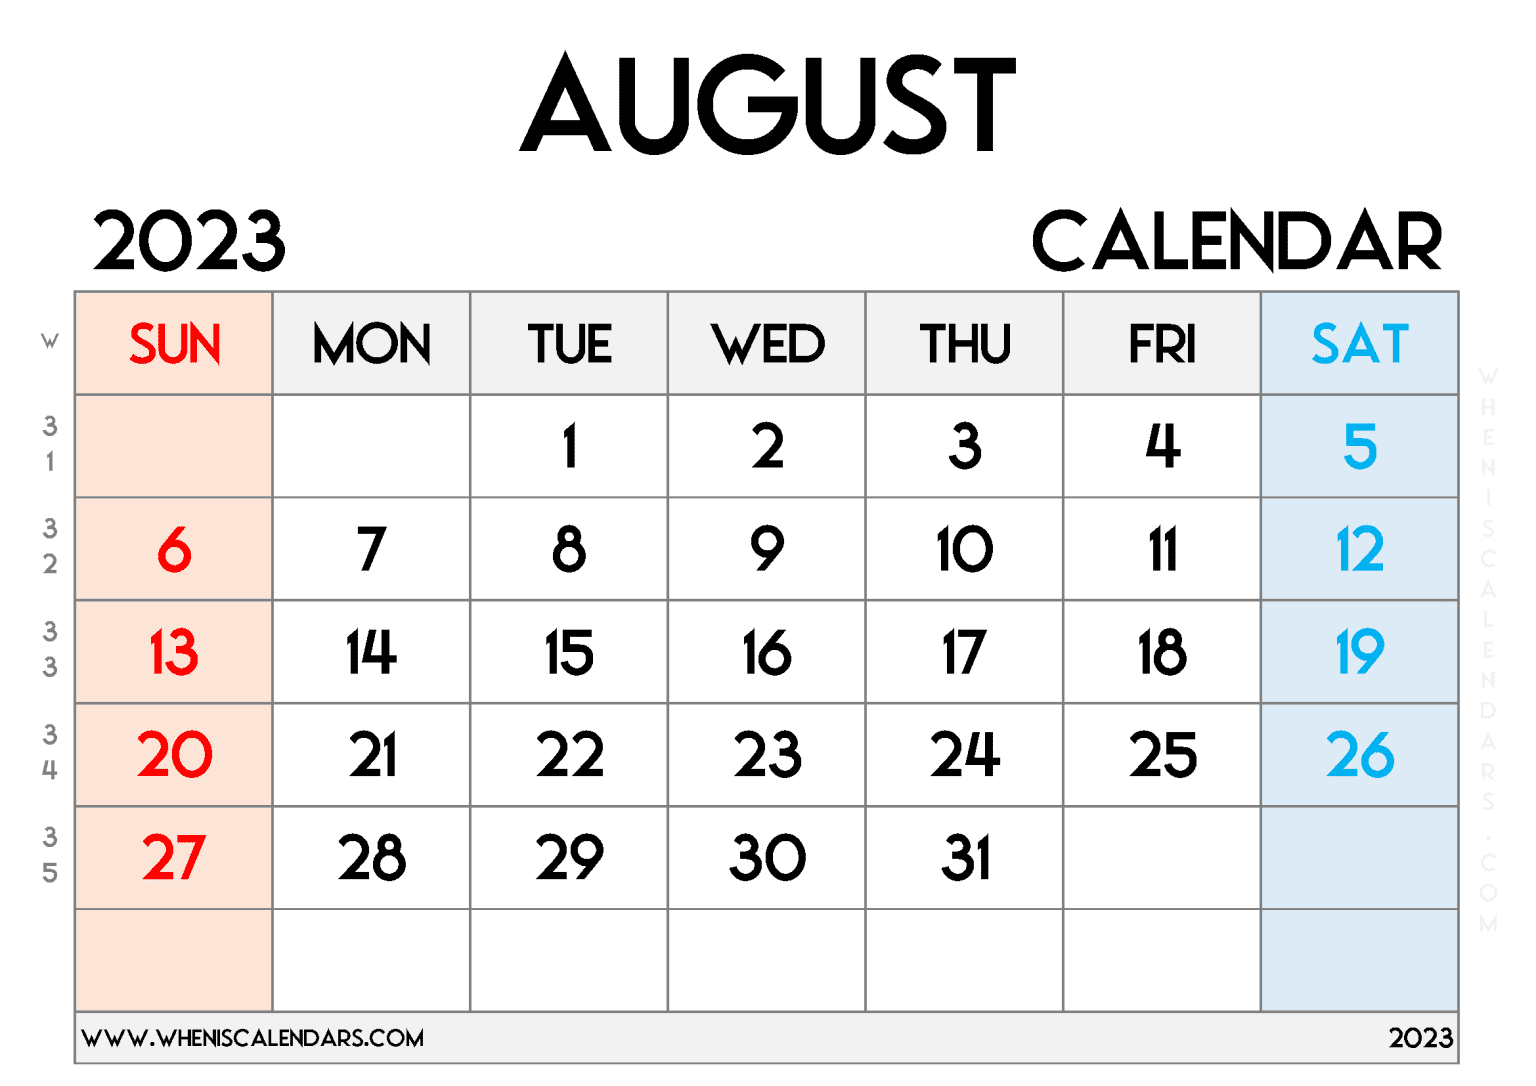 Free Printable 2023 Monthly Calendar With Week Numbers